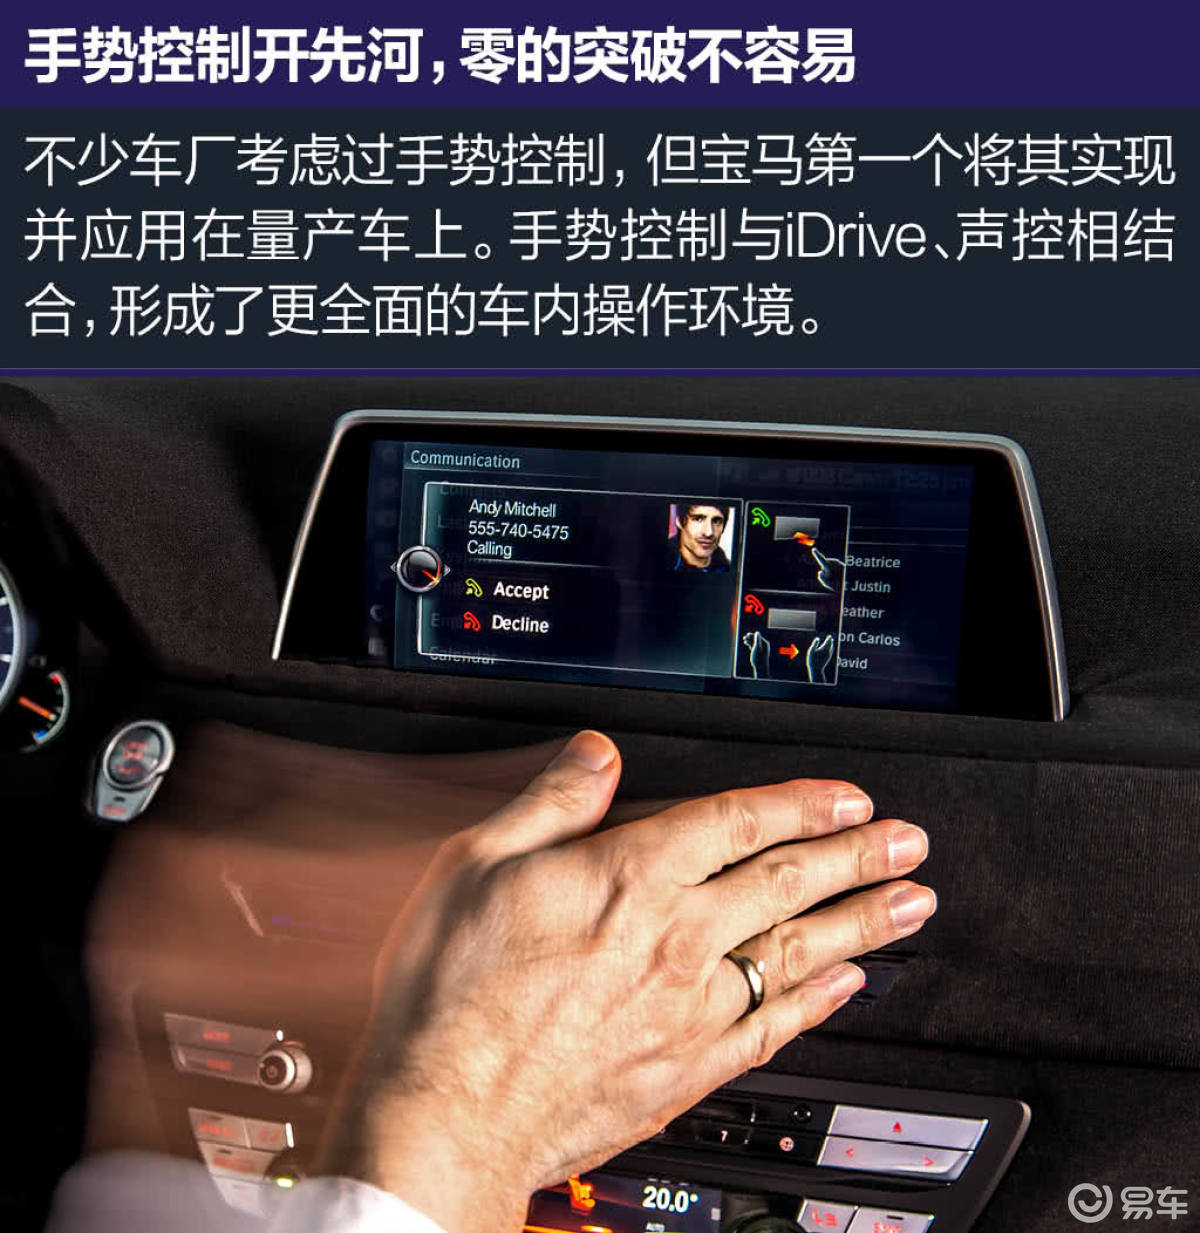 全新BMW 7系的黑科技 激光大灯/手势控制